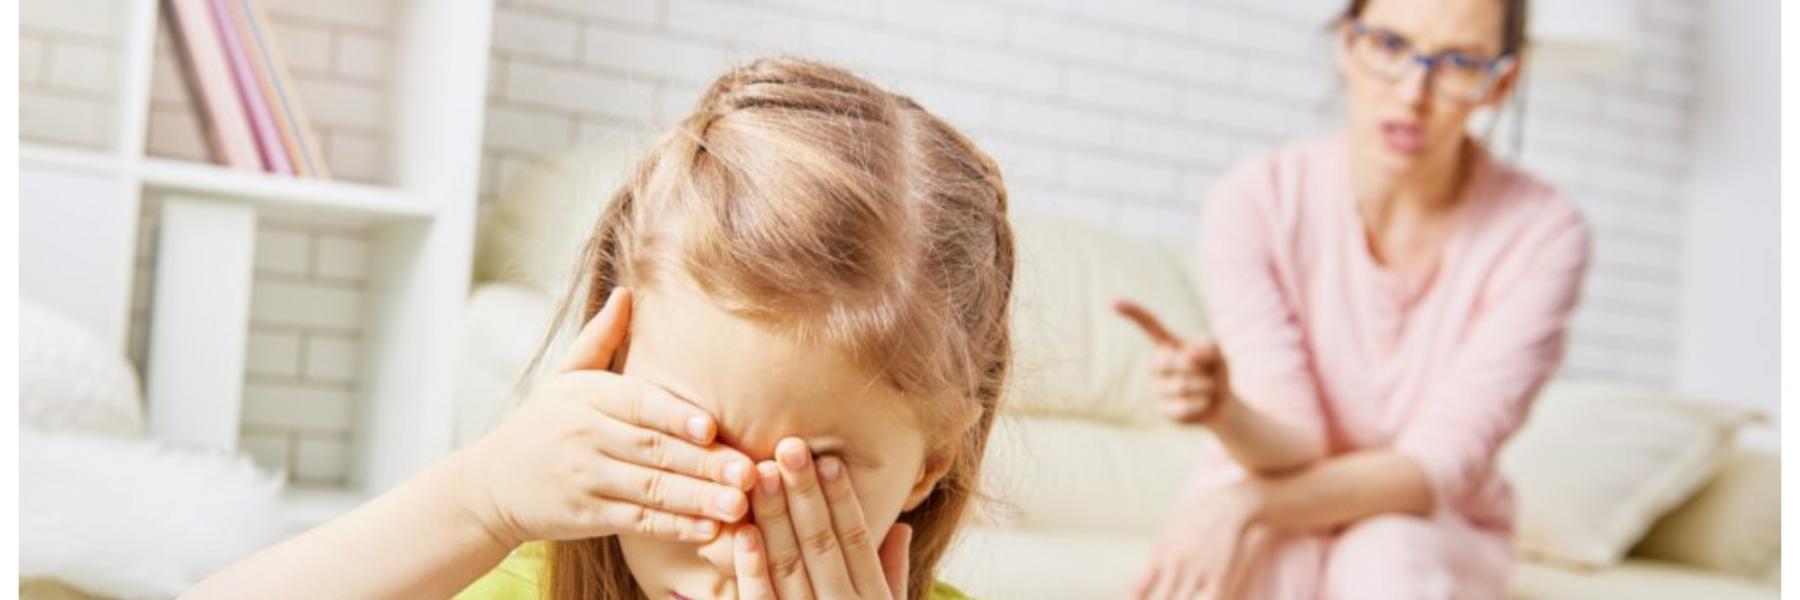 نصائح للتعامل مع الأطفال ذوي الانفعالات العاطفية